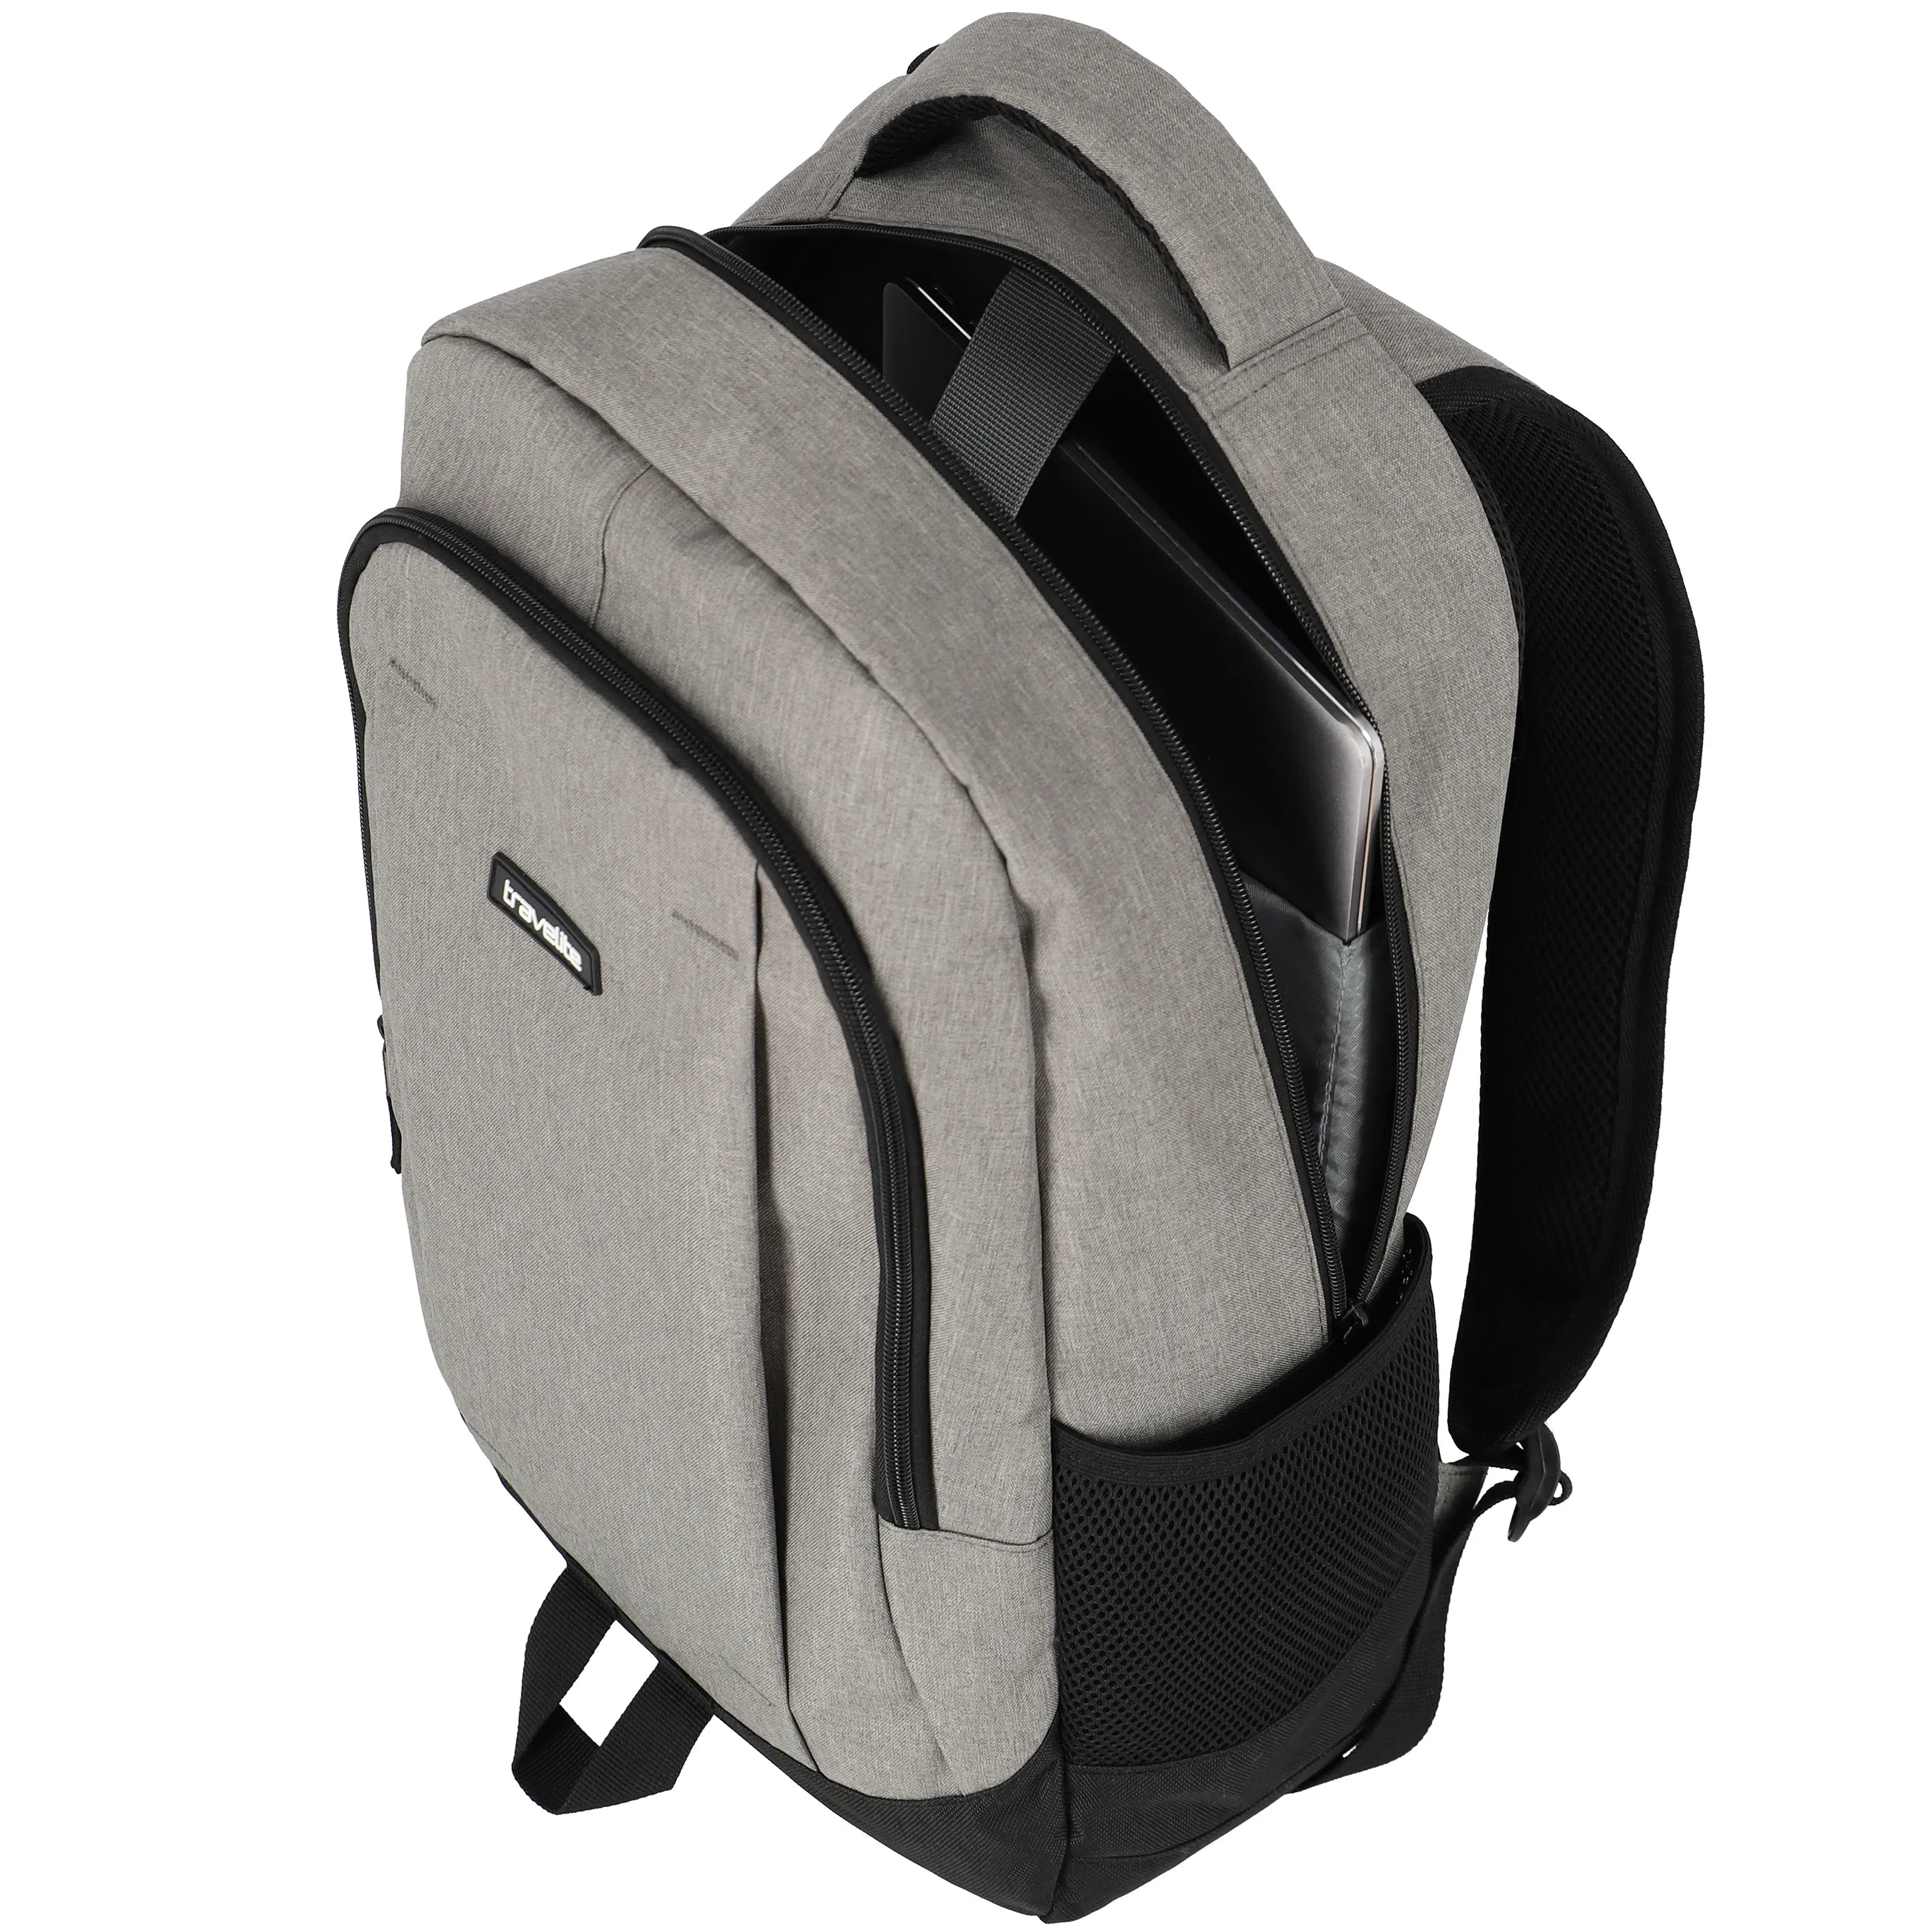 Travelite Cruise Backpack 46 cm - Light gray